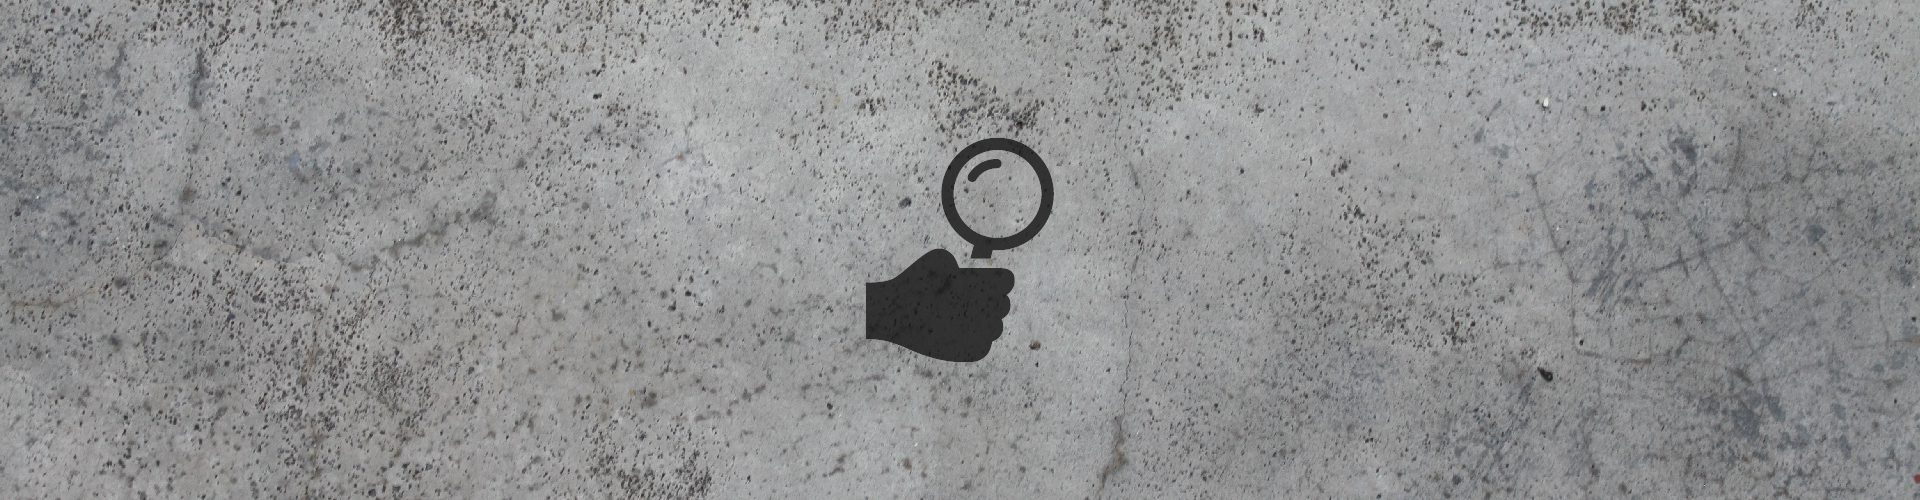 Imagen con fondo de cemento y un logo de una mano sosteniendo una lupa